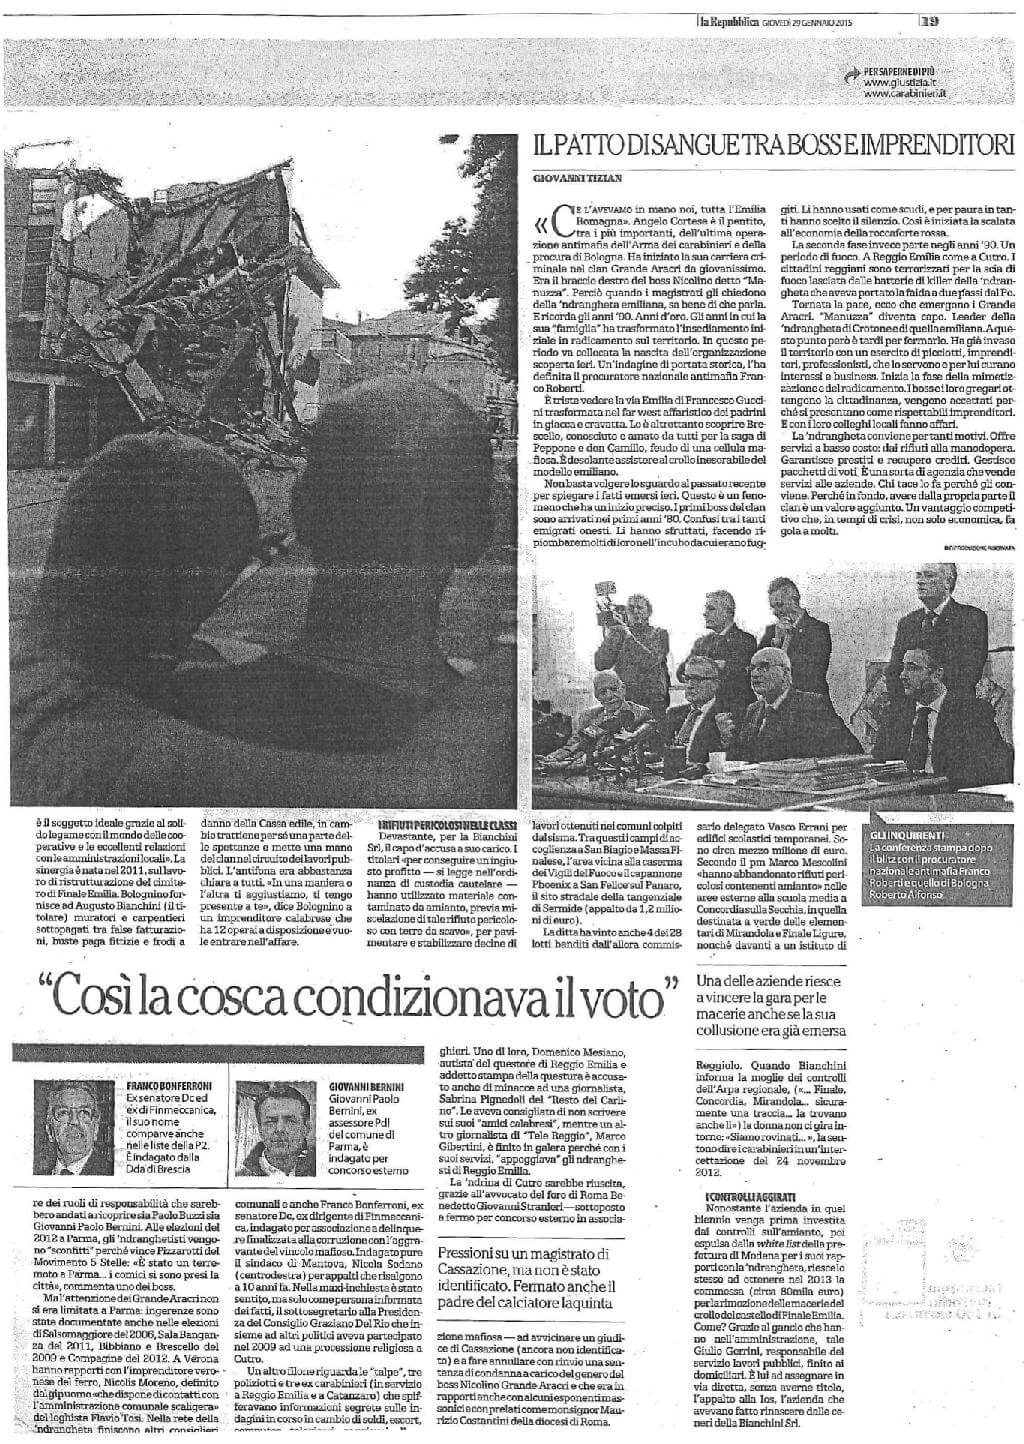 29_1_15_repubblica_bo_p19-page-001